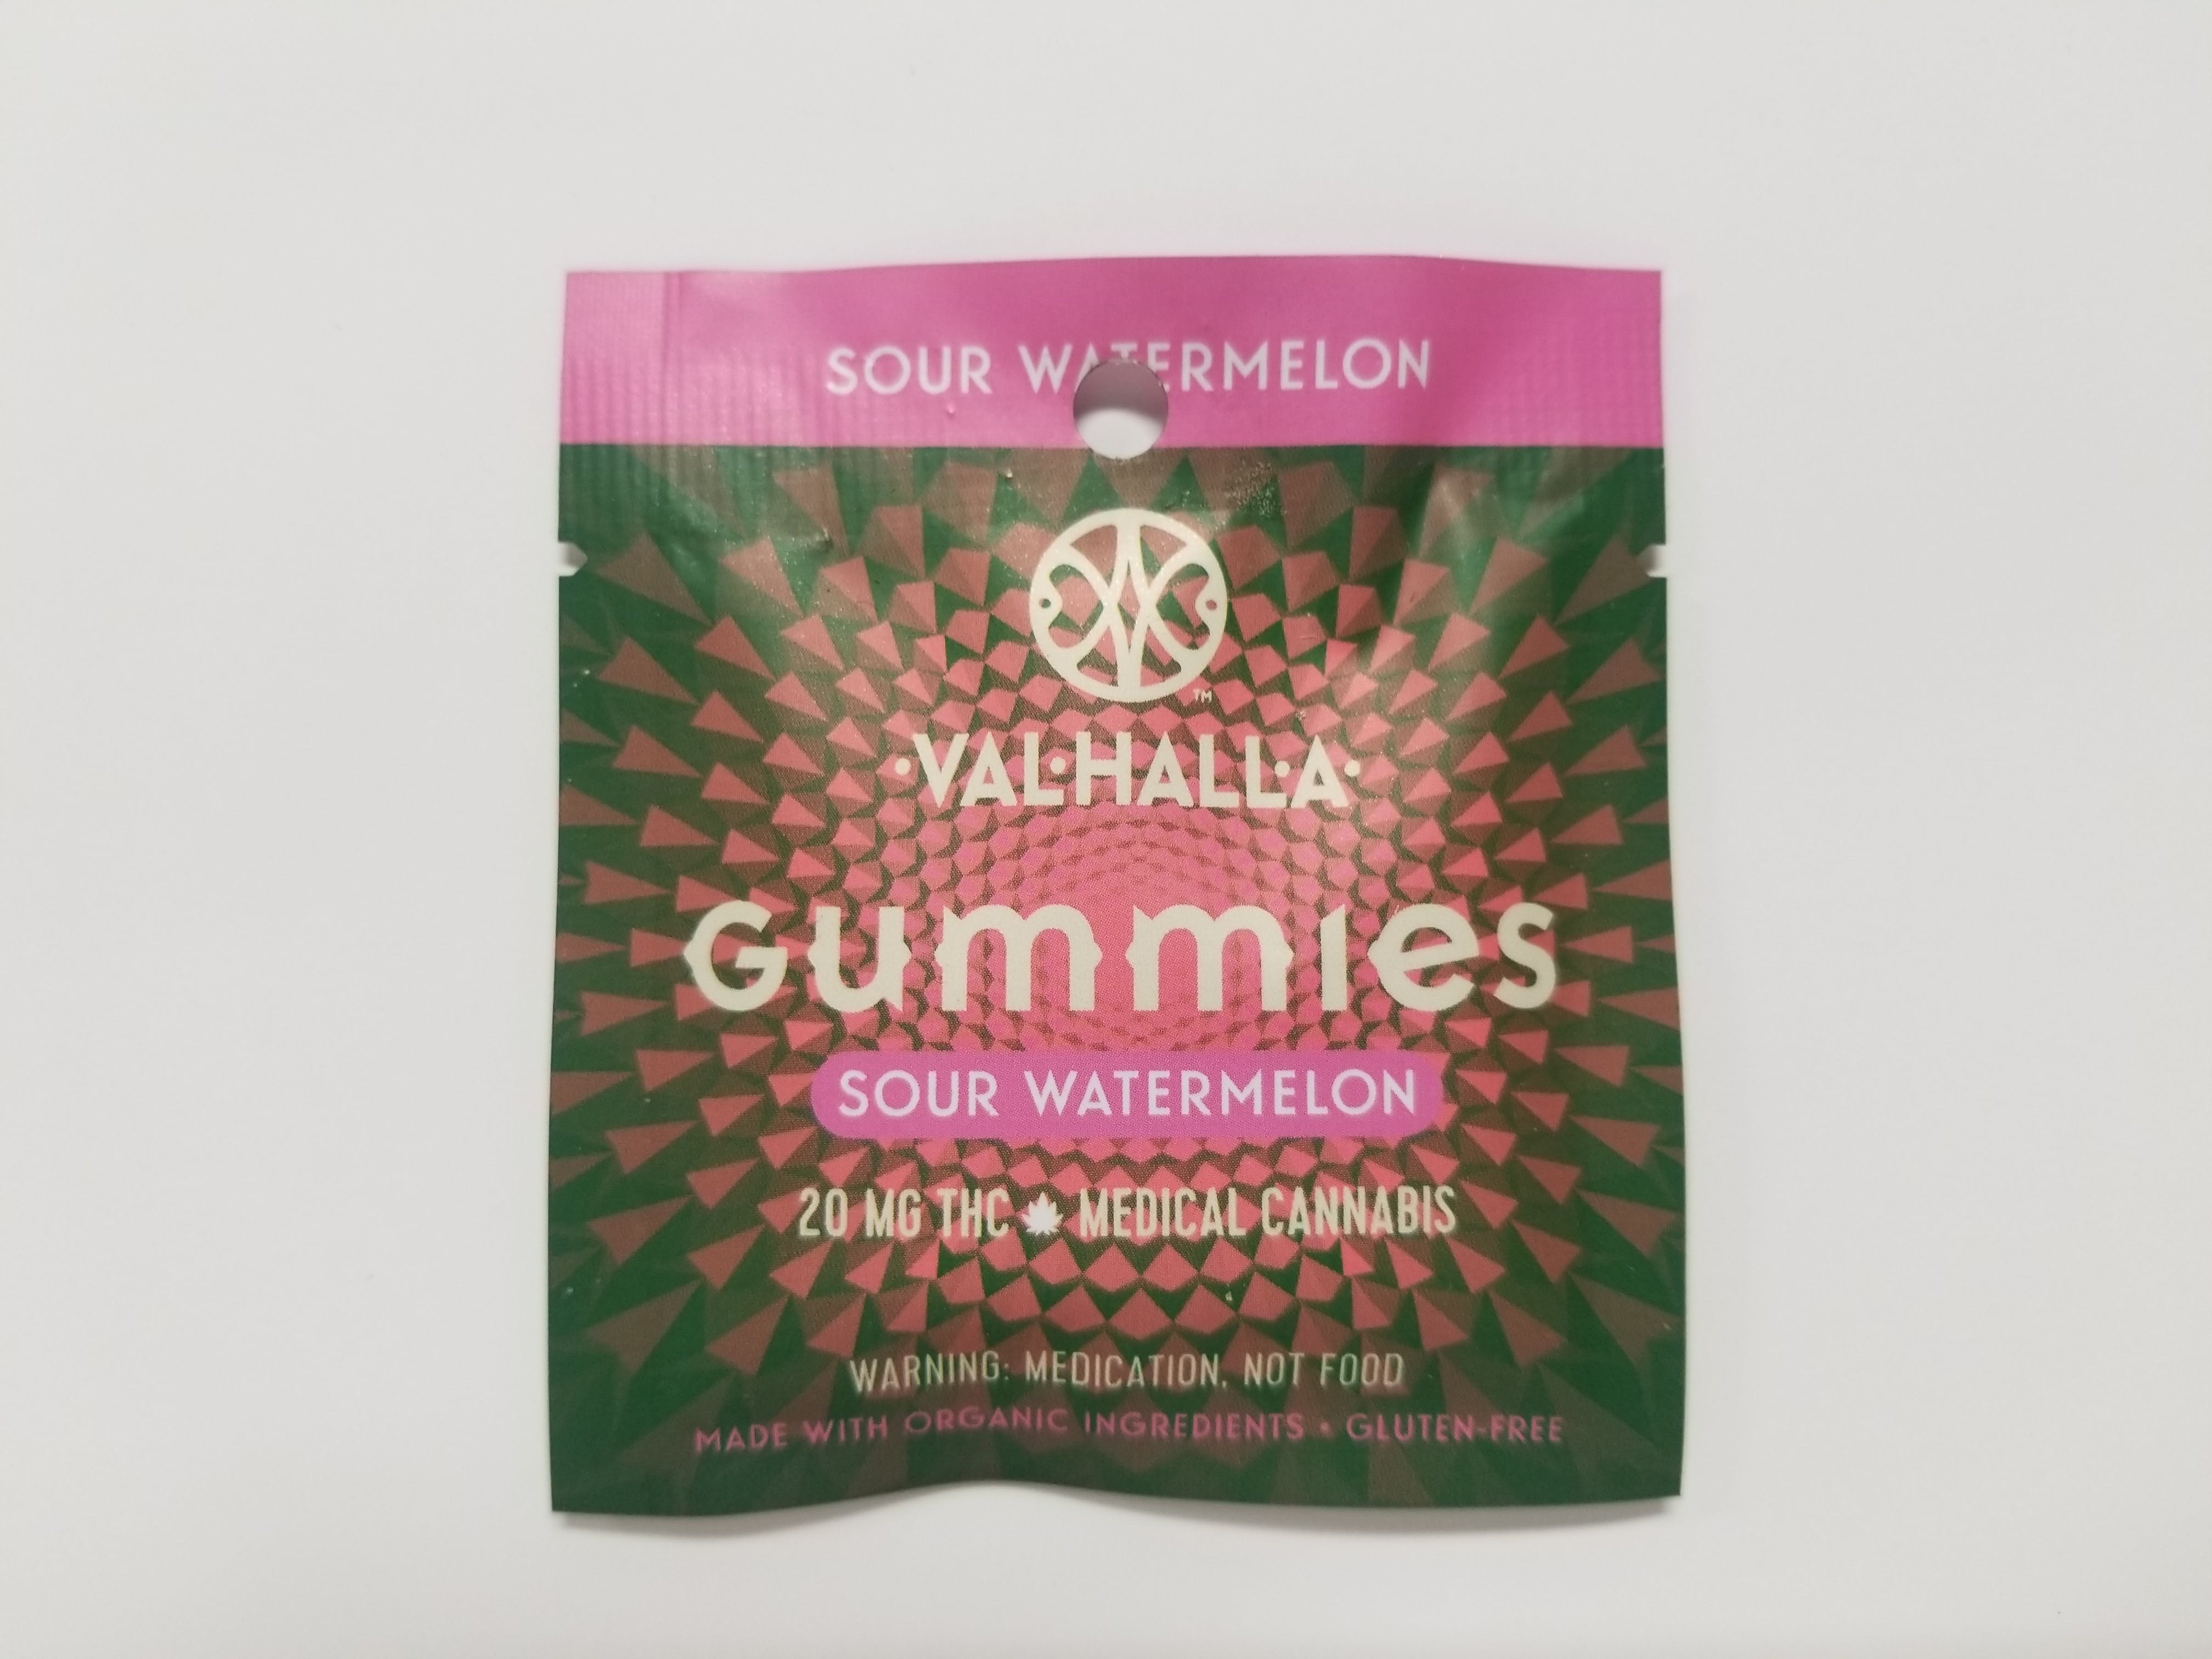 edible-valhalla-sour-watermelon-gummies-20mg-thc